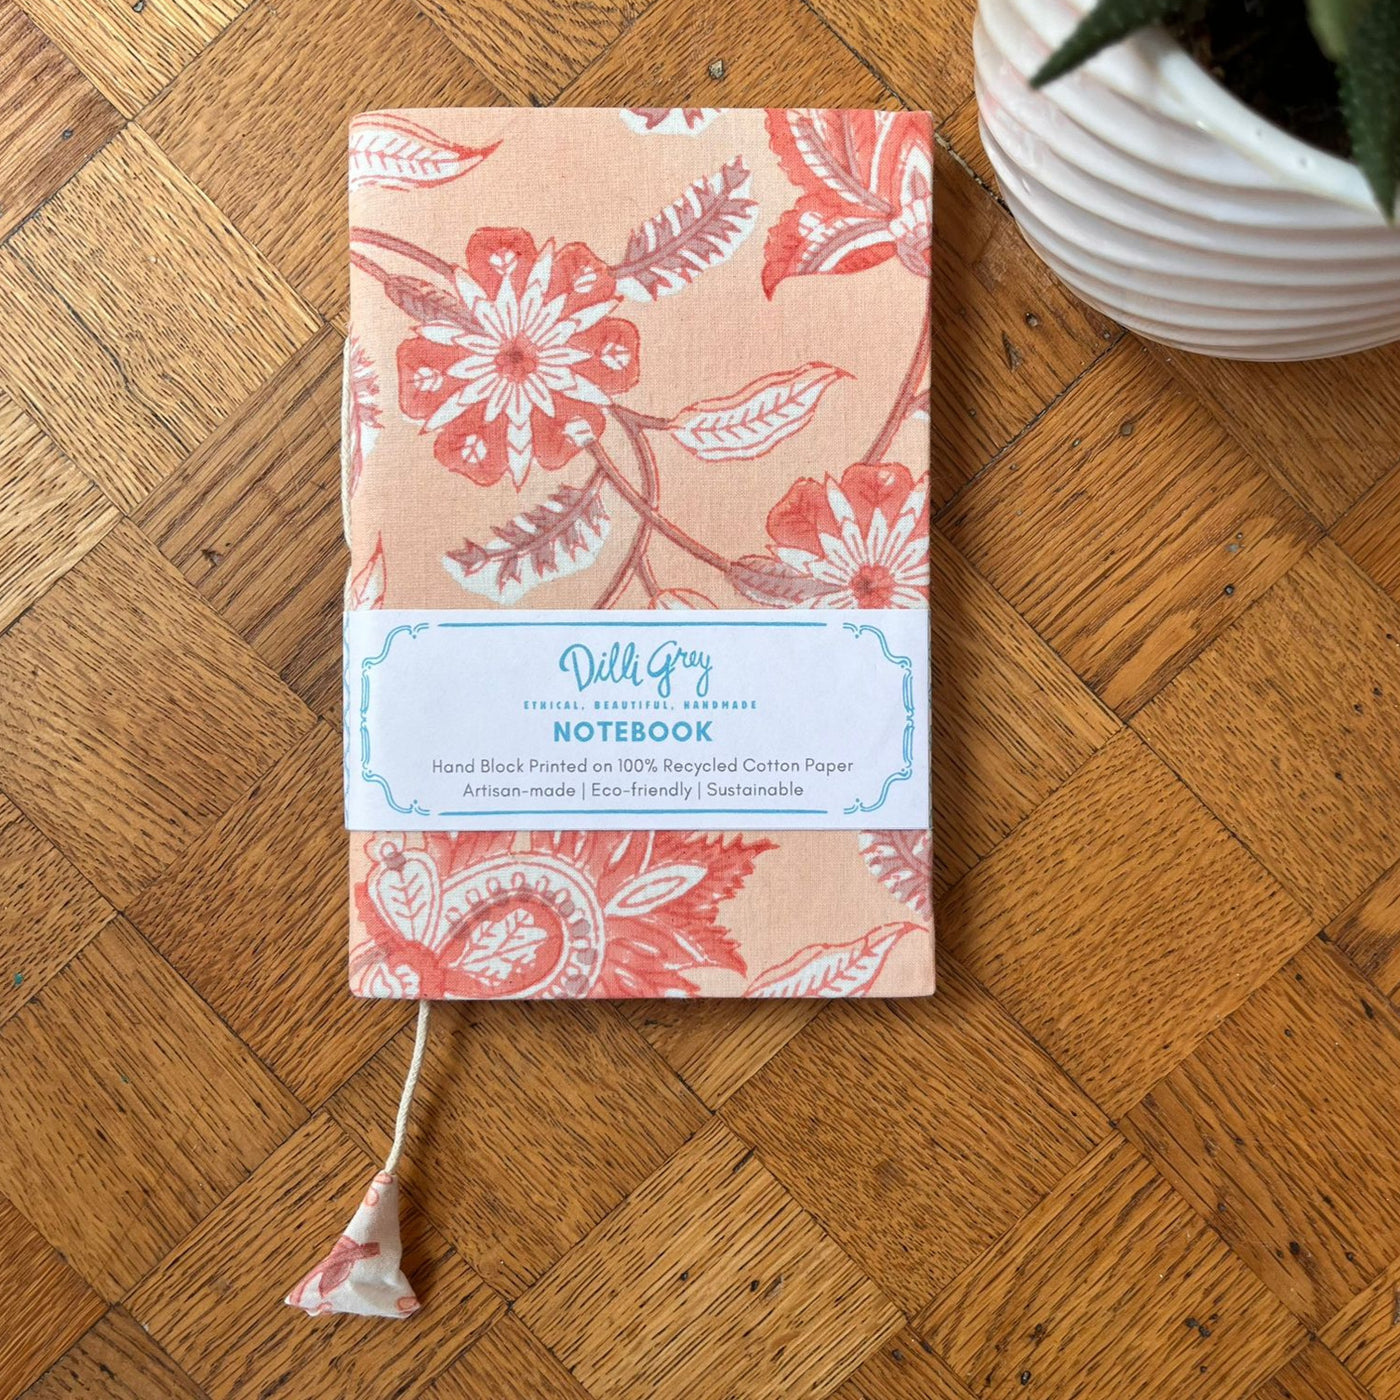 Fabric-covered notebook in peach champaca